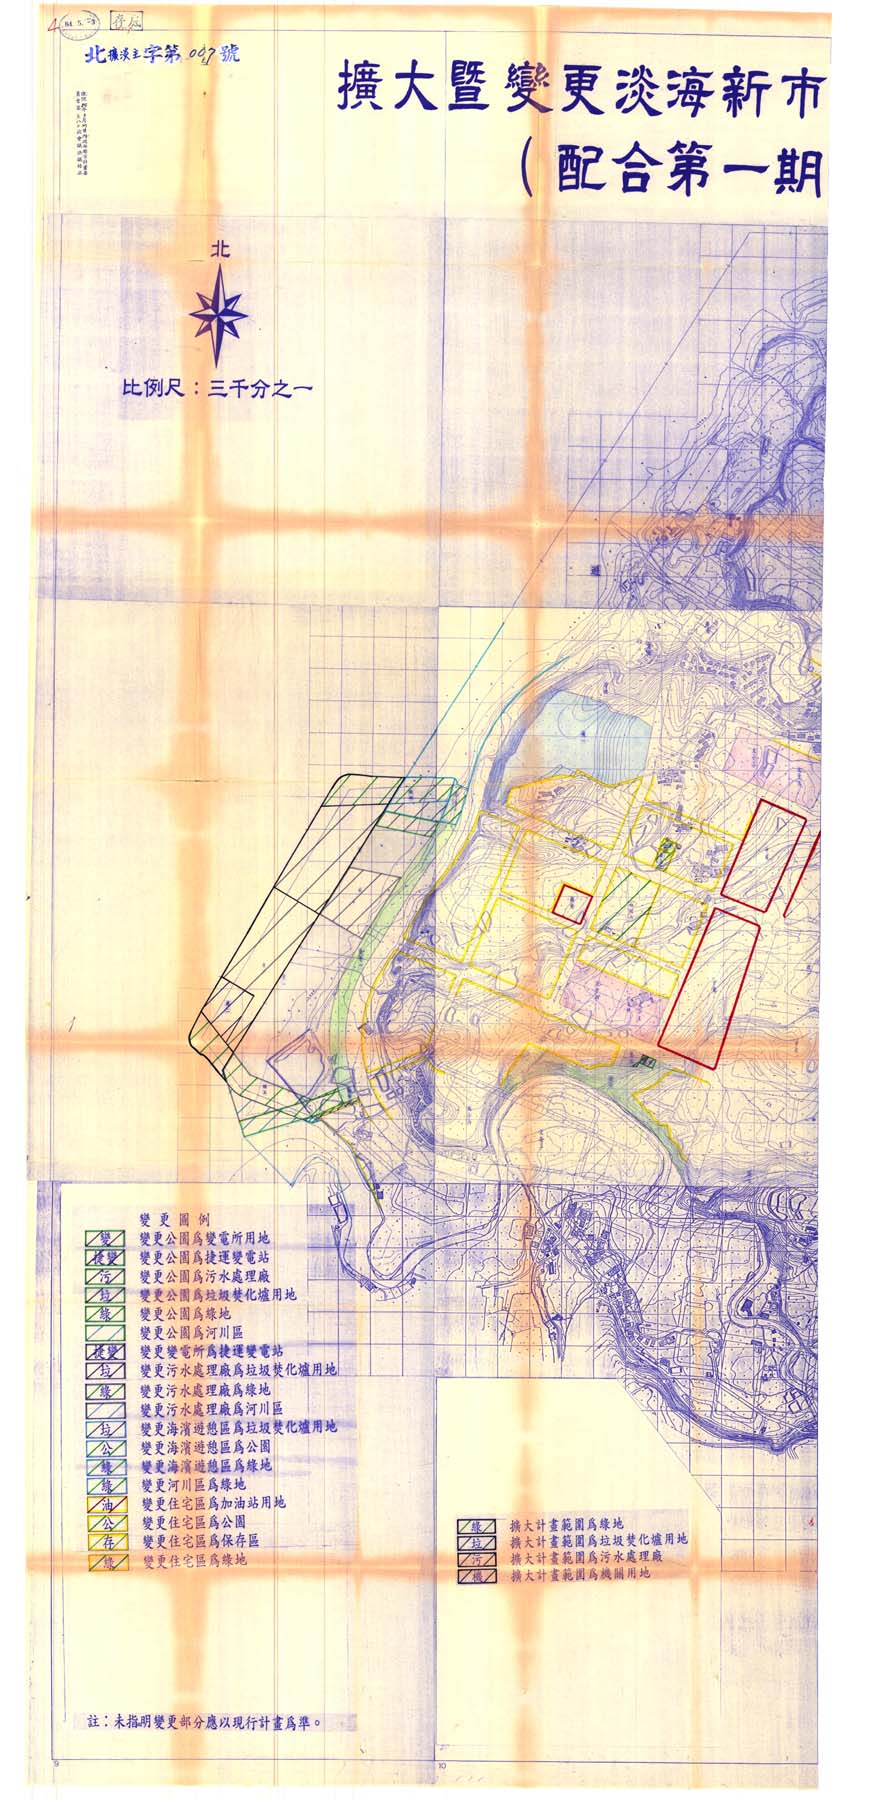 擴大暨變更淡海新市鎮特定區主要計畫圖(配合第一期發展區開發)1-2